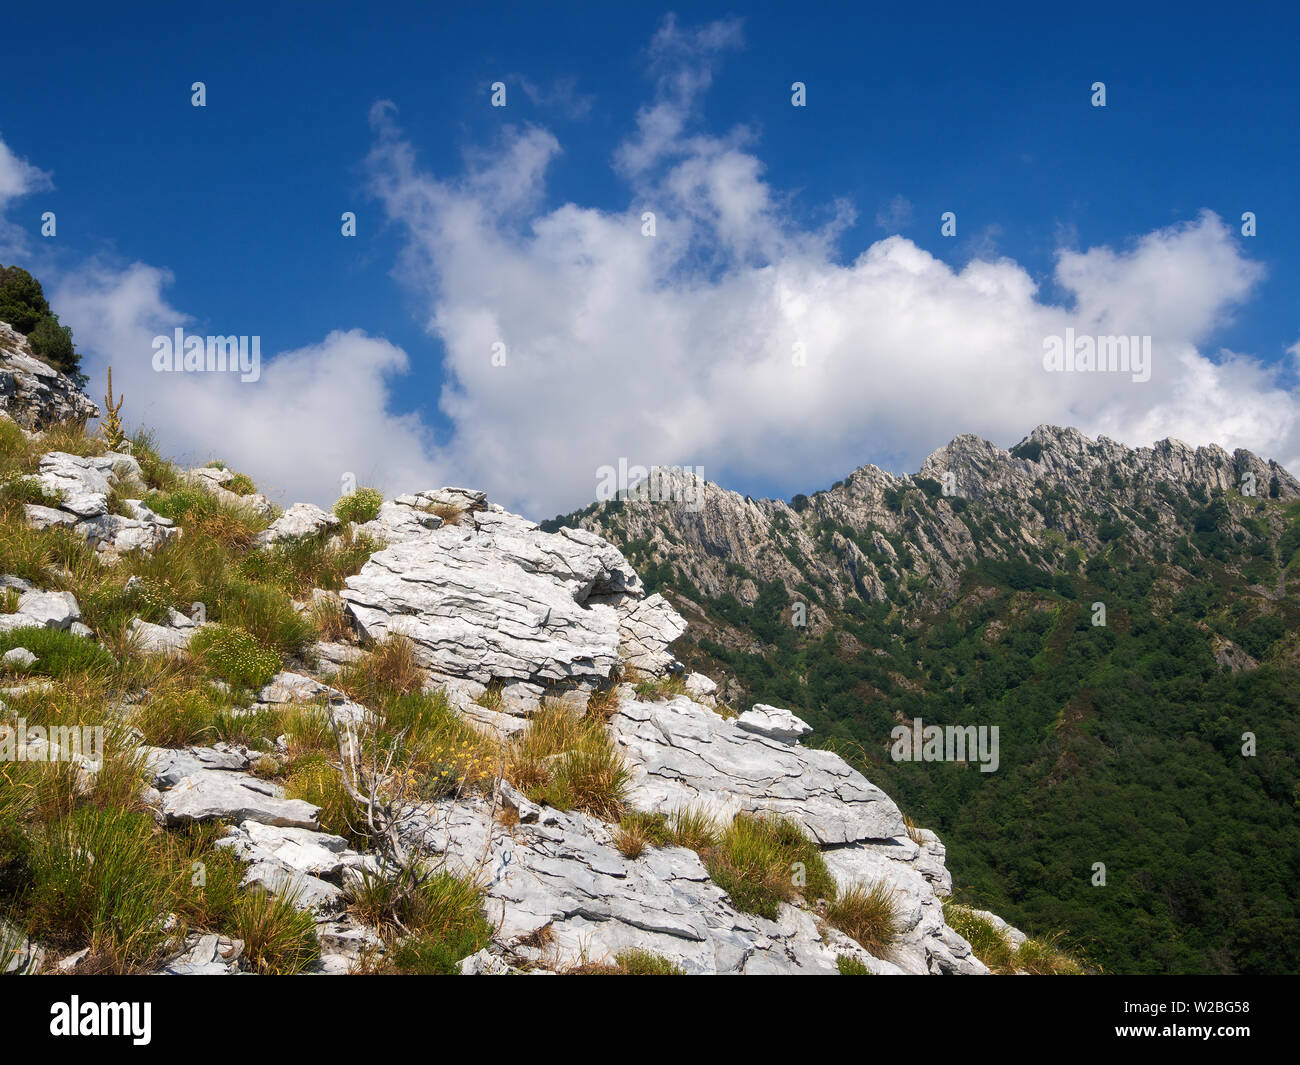 Contrastes géologiques dans les Alpes Apuanes, les Alpes Apuanes, près de col de montagne Vestito. Massa Carrara, Italie, Europe Banque D'Images